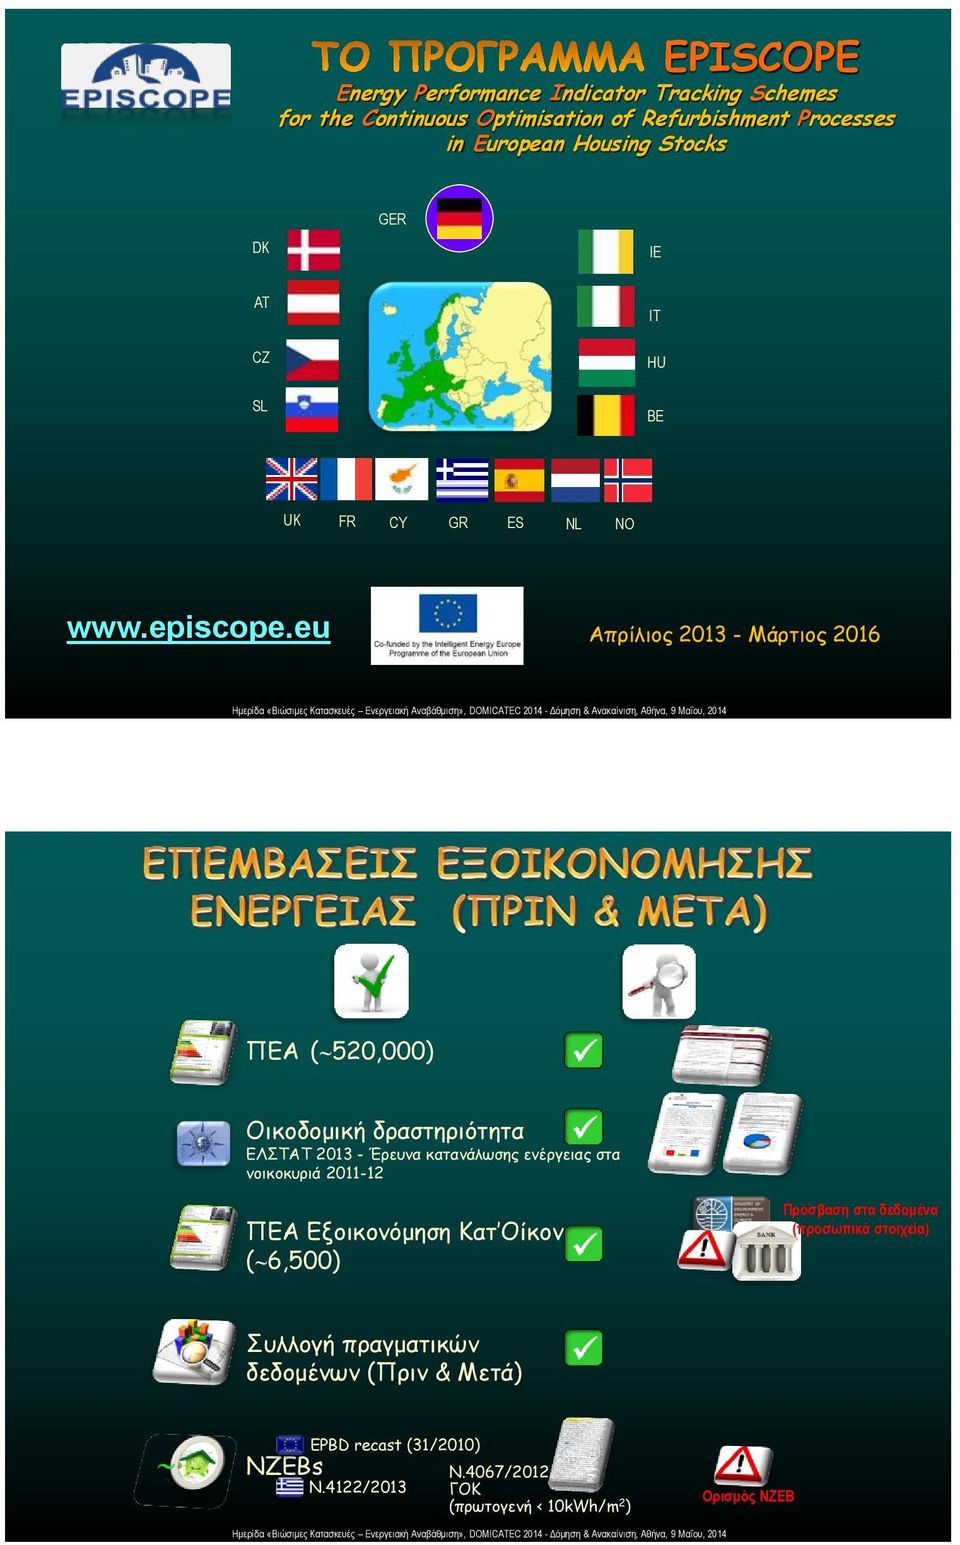 eu Απρίλιος 2013 - Μάρτιος 2016 ΠΕΑ ( 520,000) Οικοδομική δραστηριότητα ΕΛΣΤΑΤ 2013 - Έρευνα κατανάλωσης ενέργειας στα νοικοκυριά 2011-12